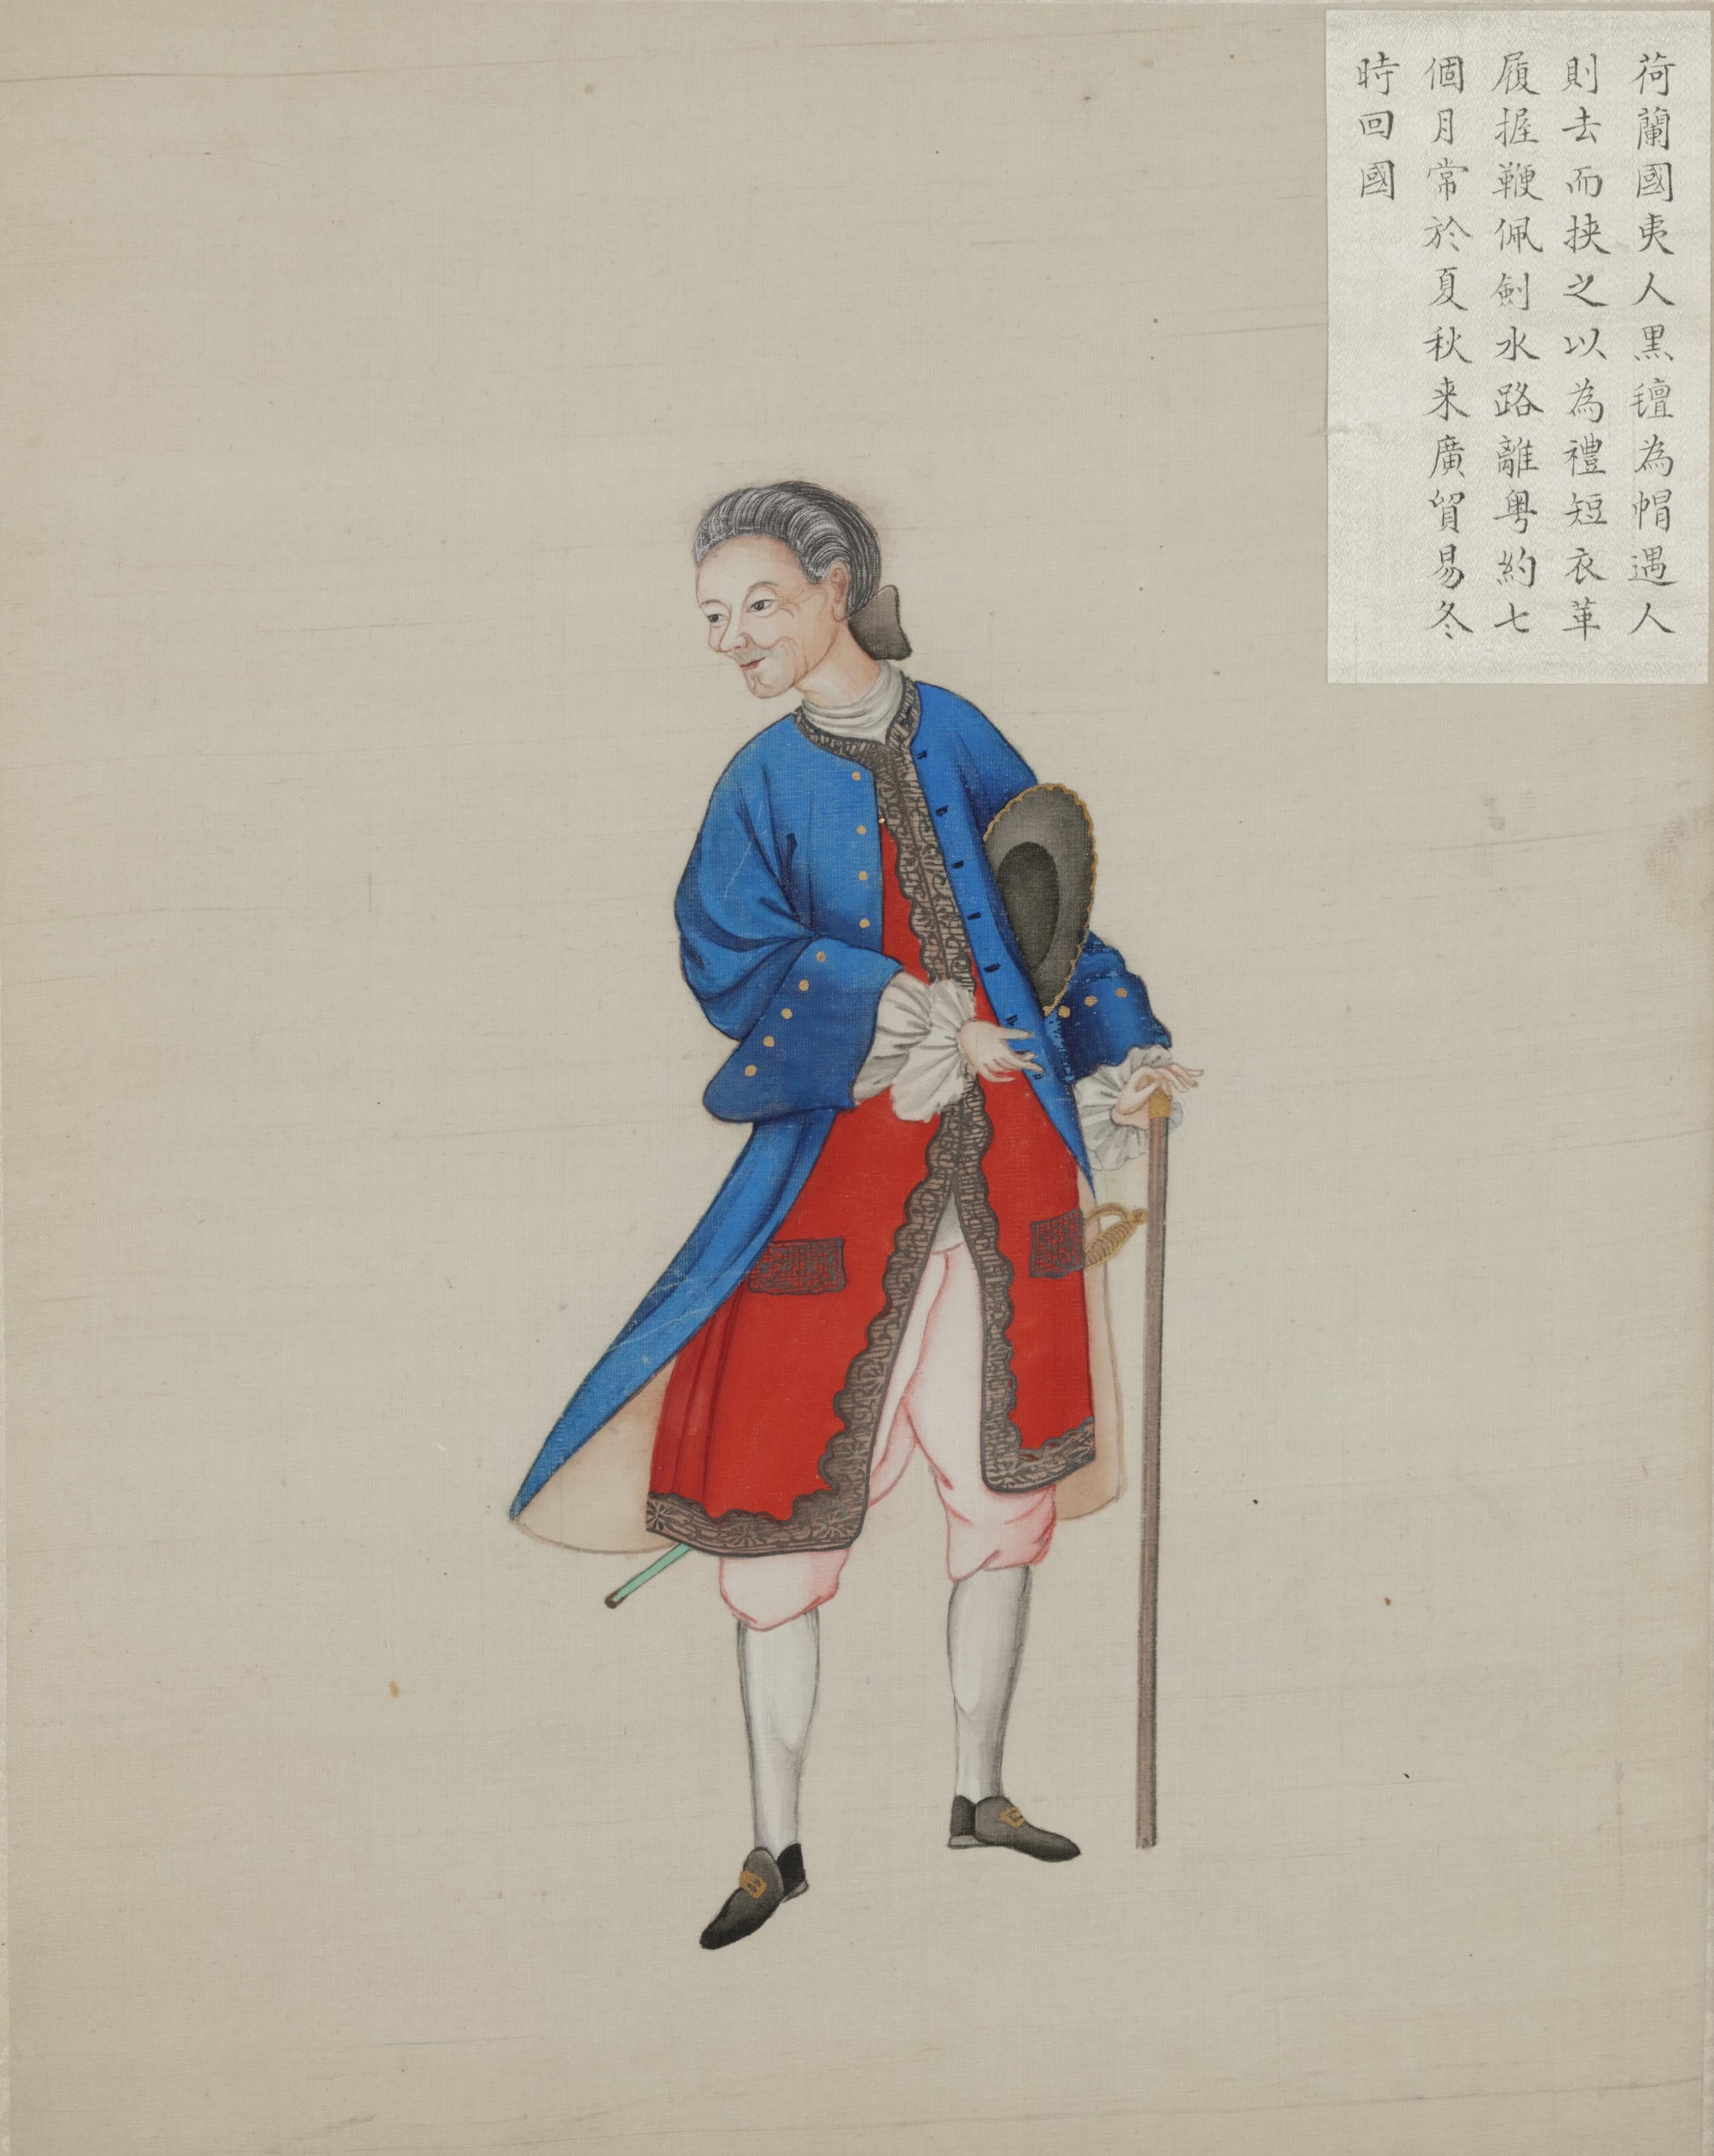 18th century chinese